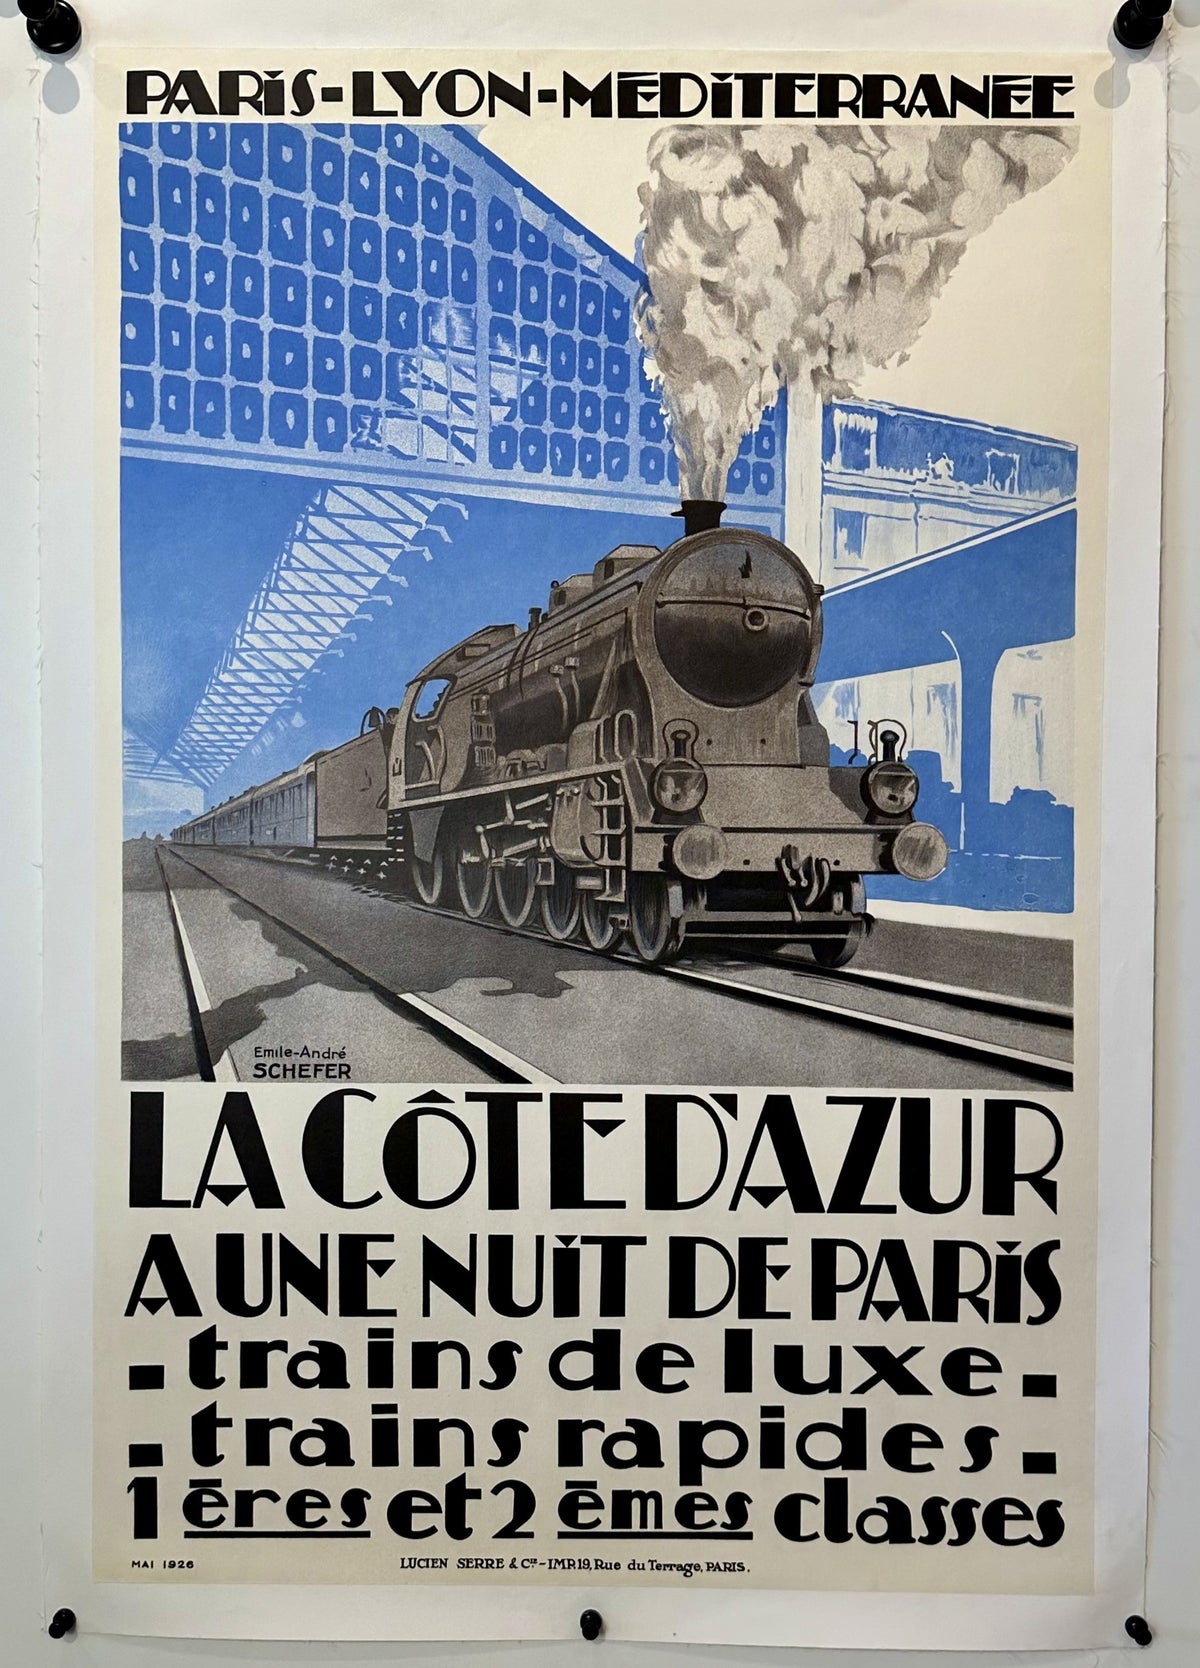 Cote de Azur - Authentic Vintage Poster